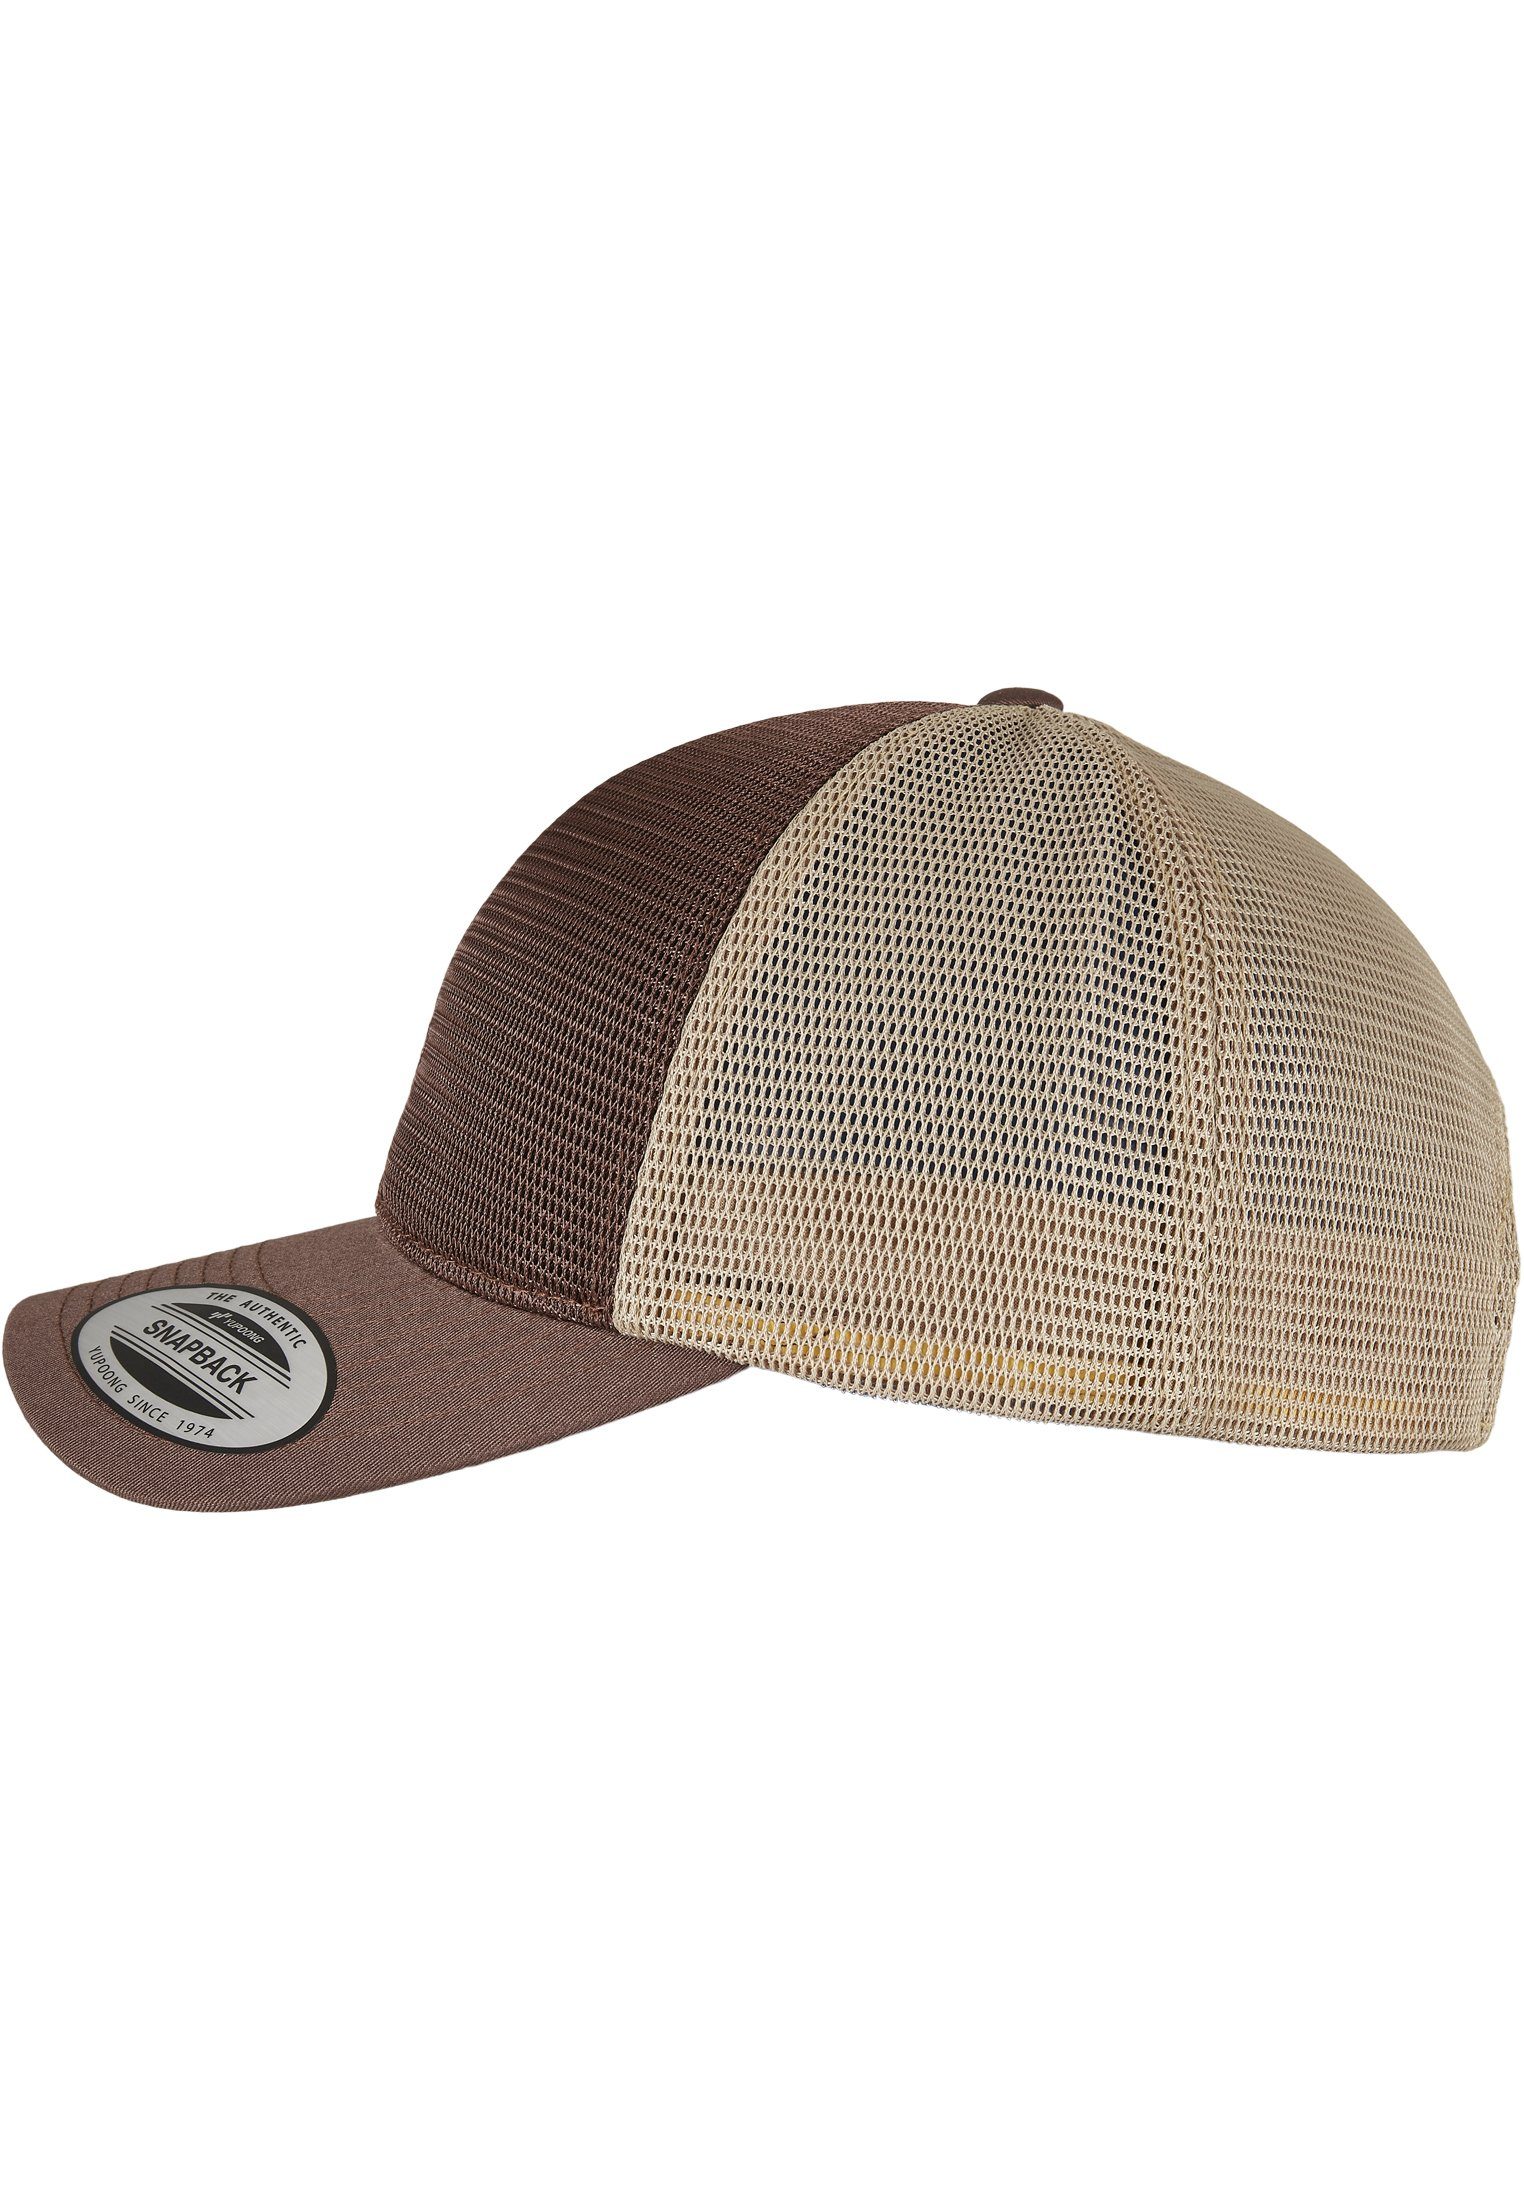 2-Tone brown/khaki Accessoires Cap Omnimesh 360° Flex Cap Flexfit